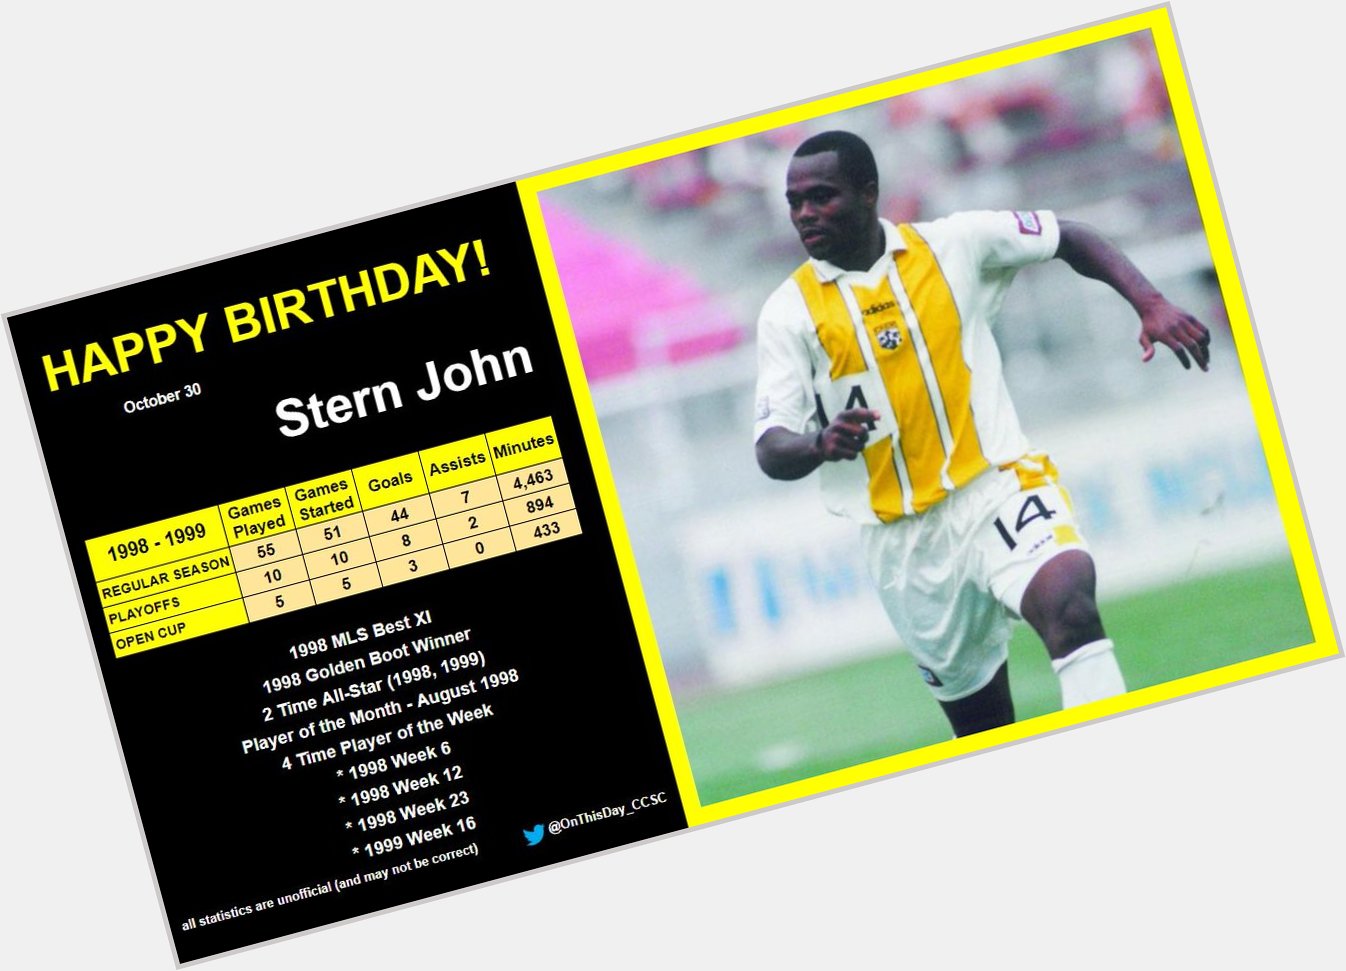 10-30
Happy Birthday, Stern John!  